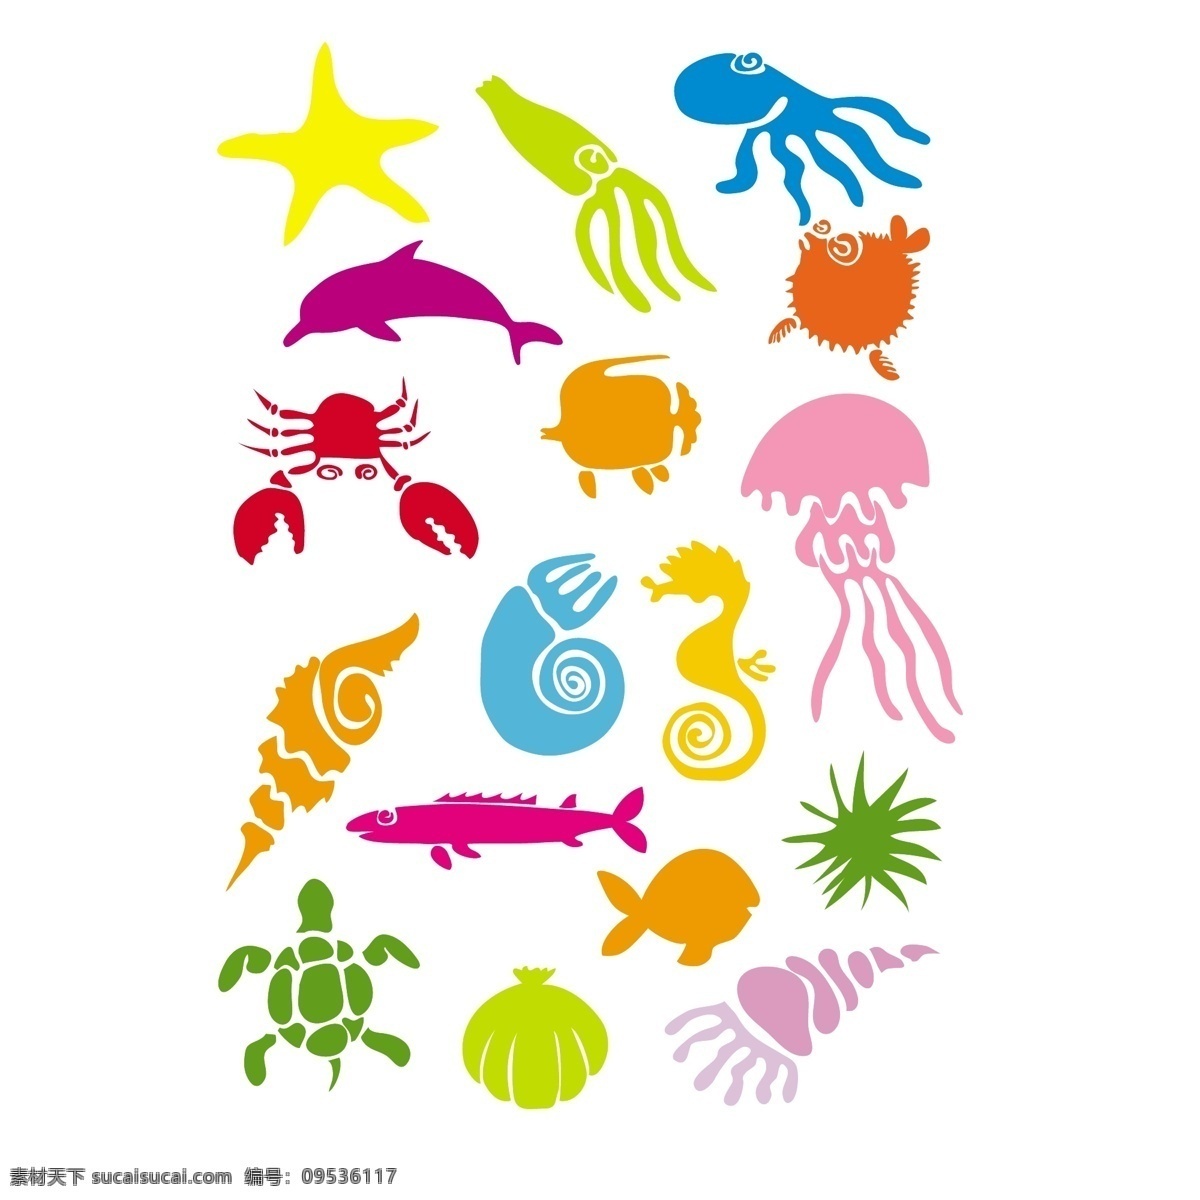 卡通 海底生物 矢量素材 模板下载 海洋生物 鱼 乌贼 鲨鱼 螃蟹 海星 龙虾 鲸 海洋 生物 生物世界 矢量 动漫动画